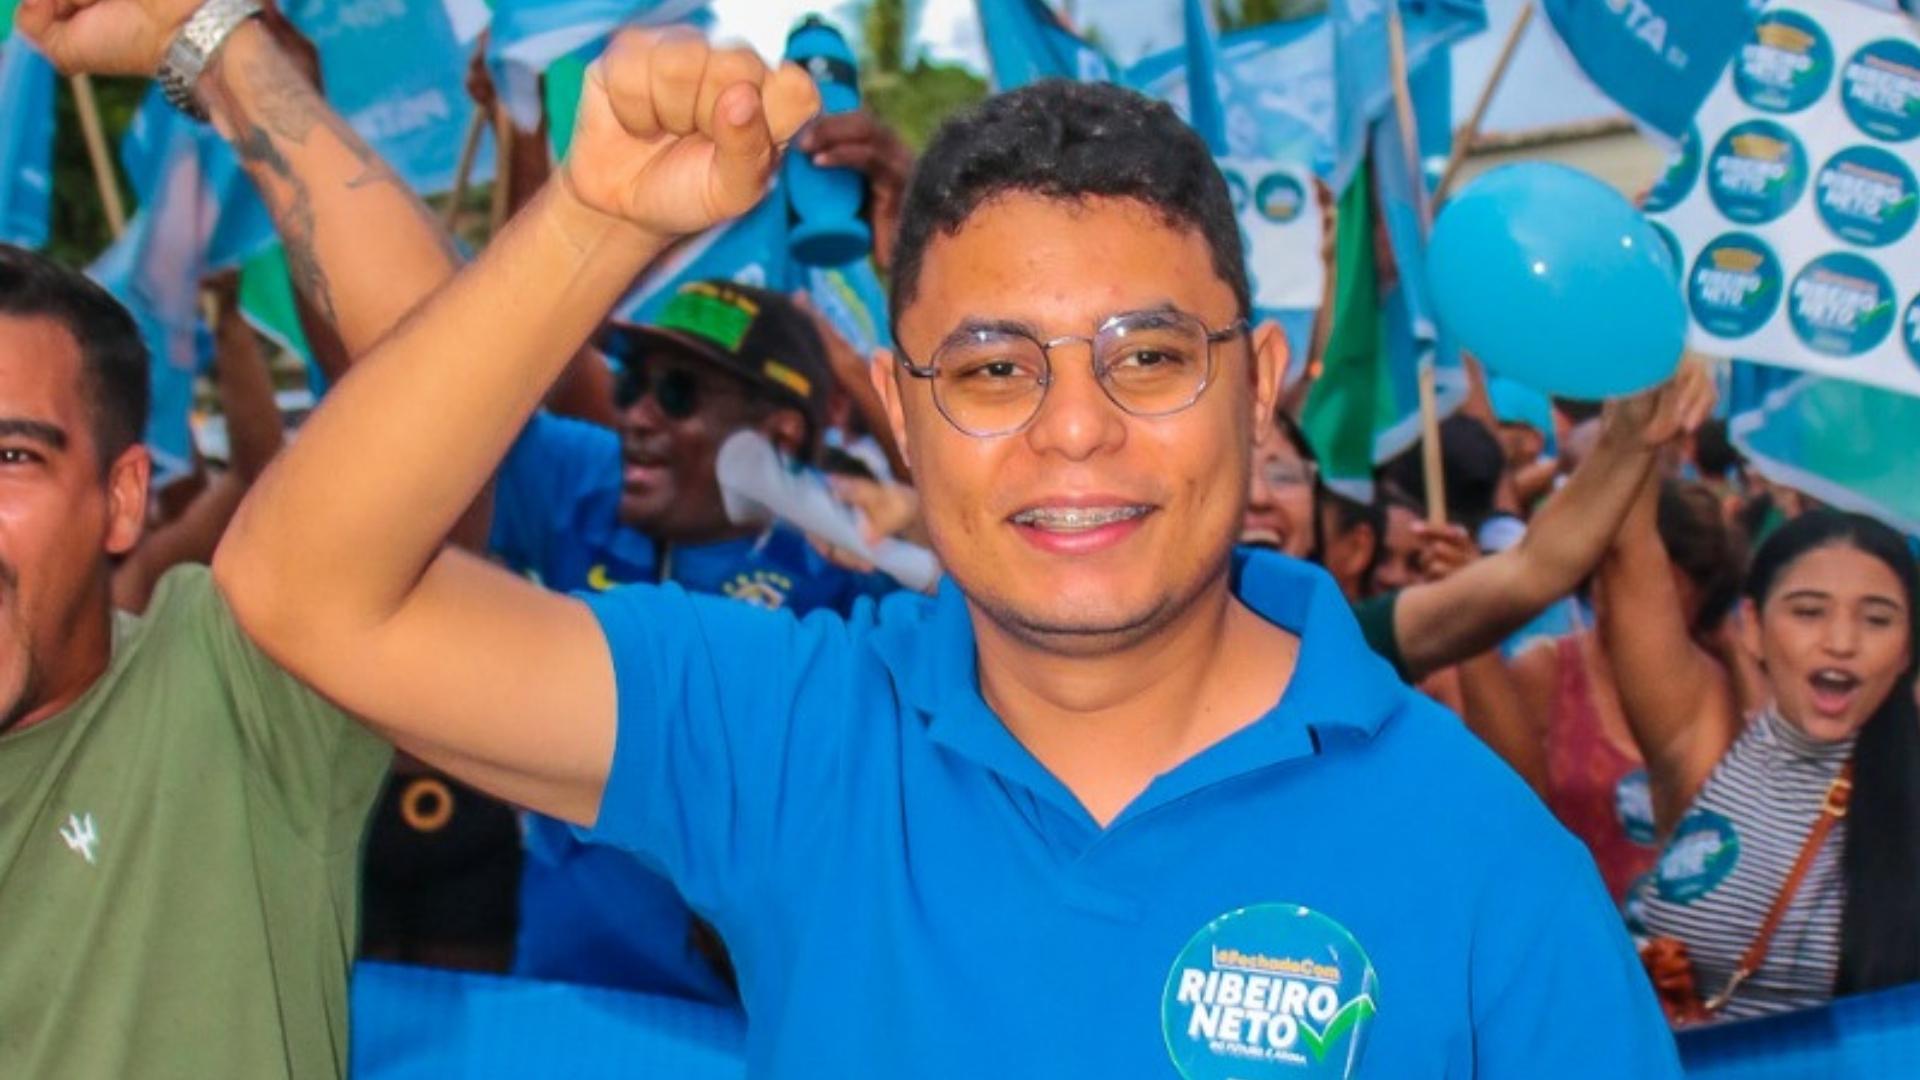 Alegria contagiante marcou a festa de lançamento da candidatura de Ribeiro Neto a deputado federal